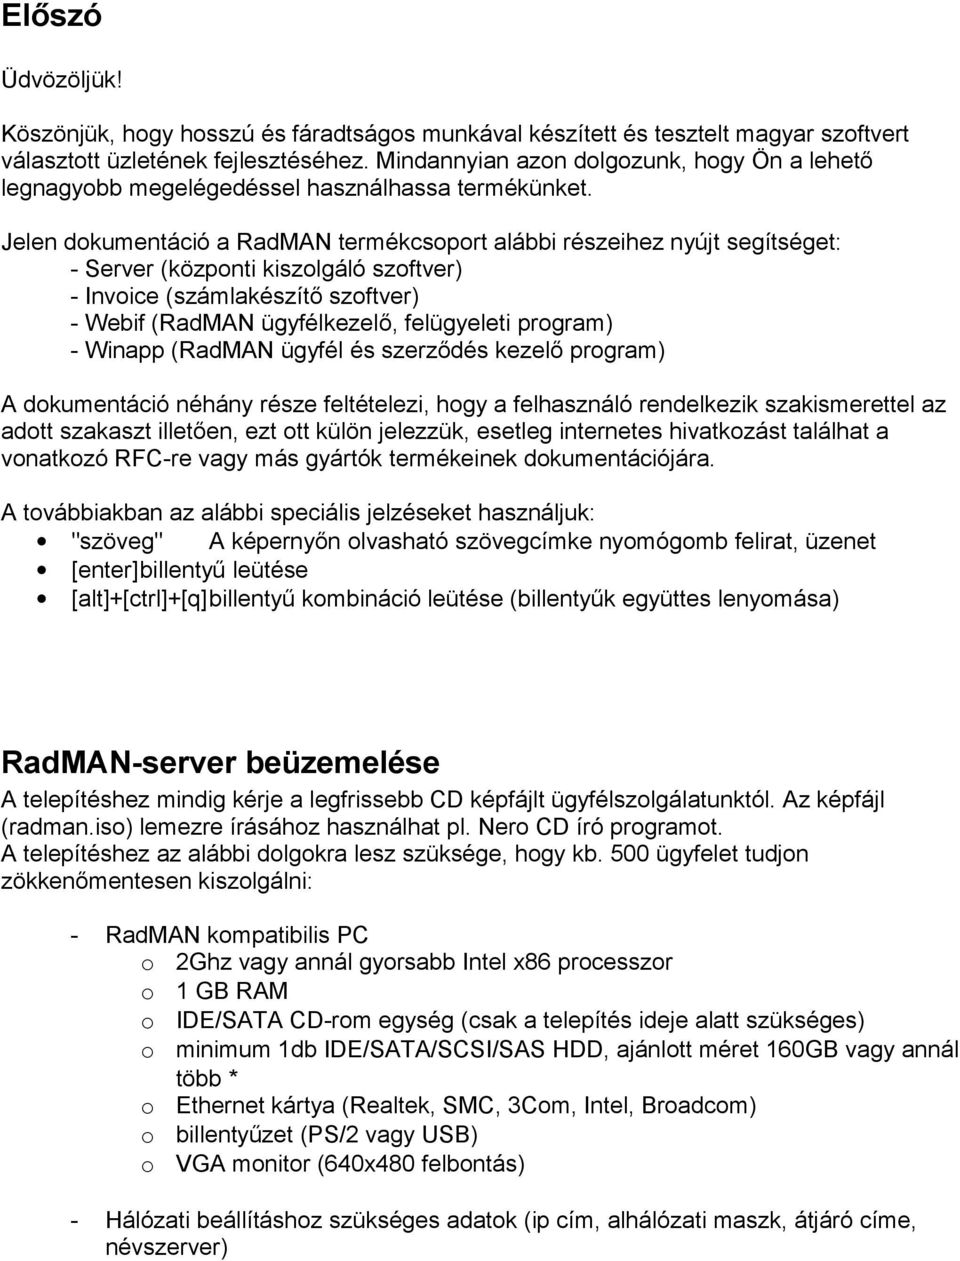 Jelen dokumentáció a RadMAN termékcsoport alábbi részeihez nyújt segítséget: - Server (központi kiszolgáló szoftver) - Invoice (számlakészítő szoftver) - Webif (RadMAN ügyfélkezelő, felügyeleti